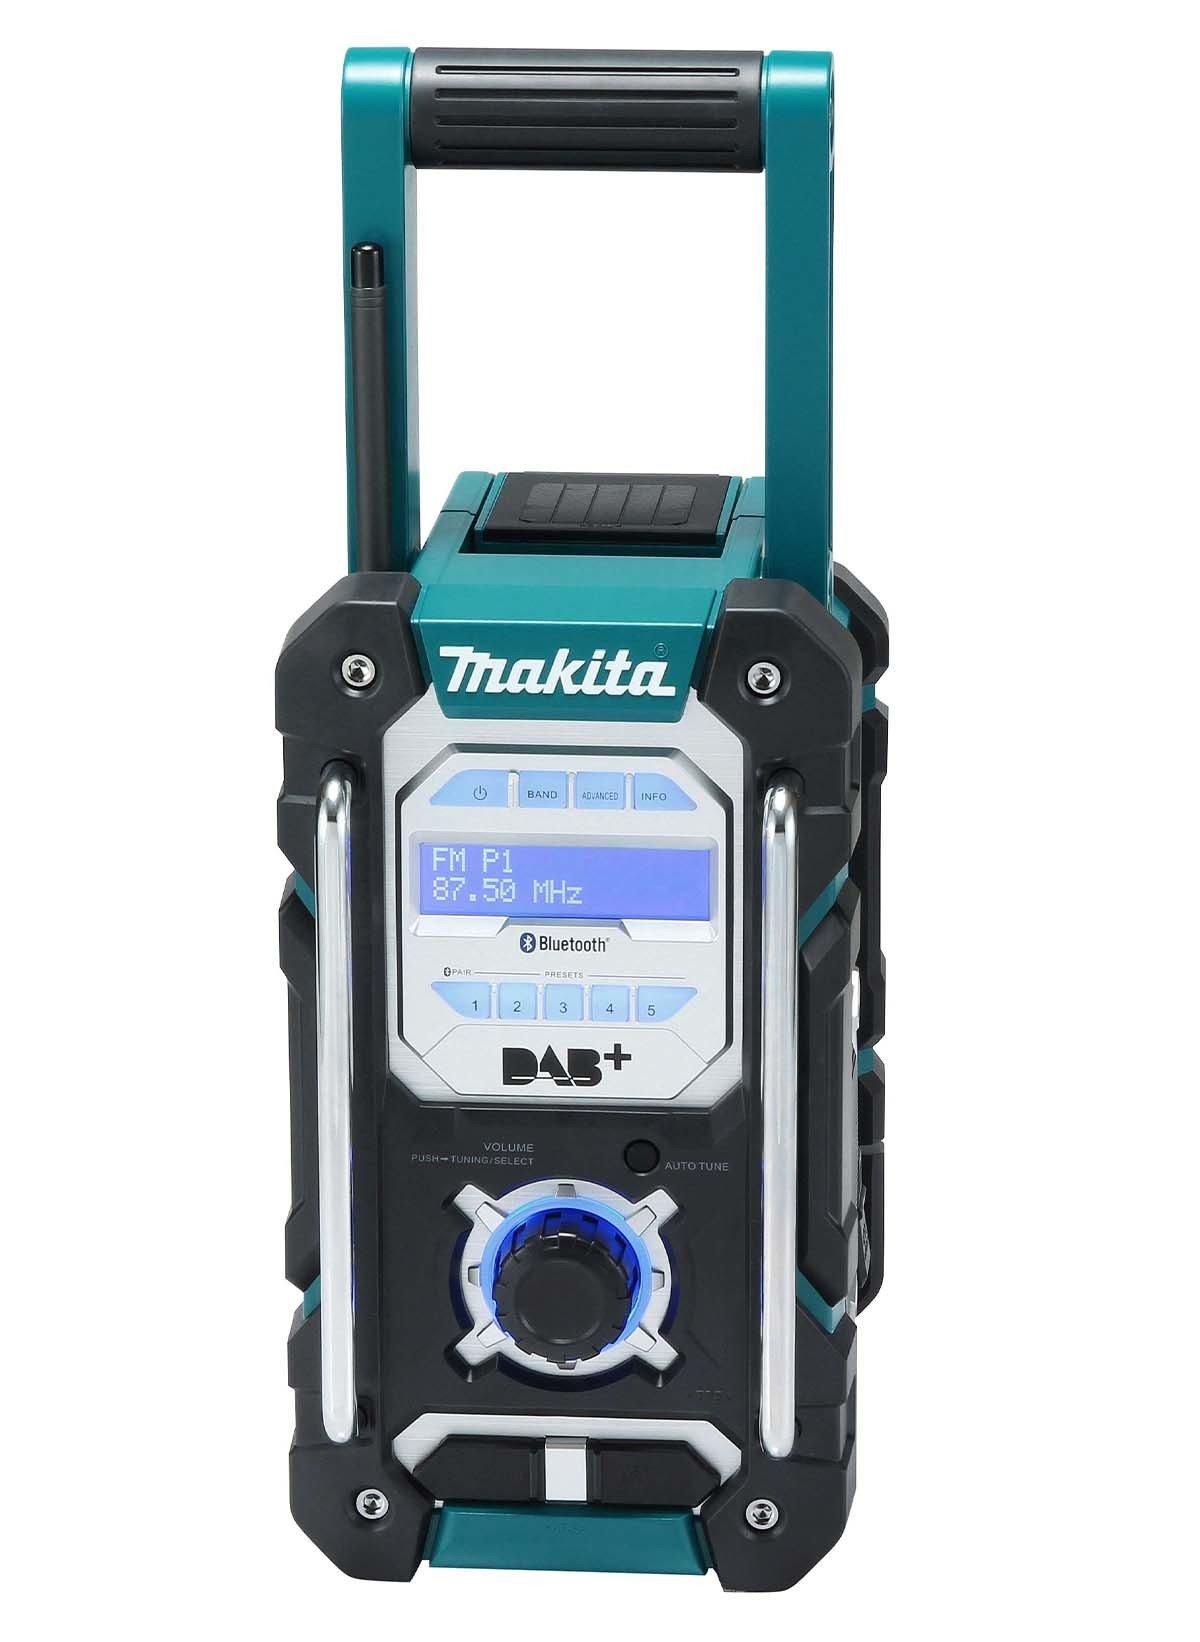 Makita DMR 112 Baustellenradio (Digitalradio (DAB), FM-Tuner, Bluetooth,  DAB+ Radio, Gehäuse in robuster Baustellenausführung, Mit Spritzschutz bis  Schutzklasse IP64, Für den Empfang von DAB, DAB+ und FM geeignet)